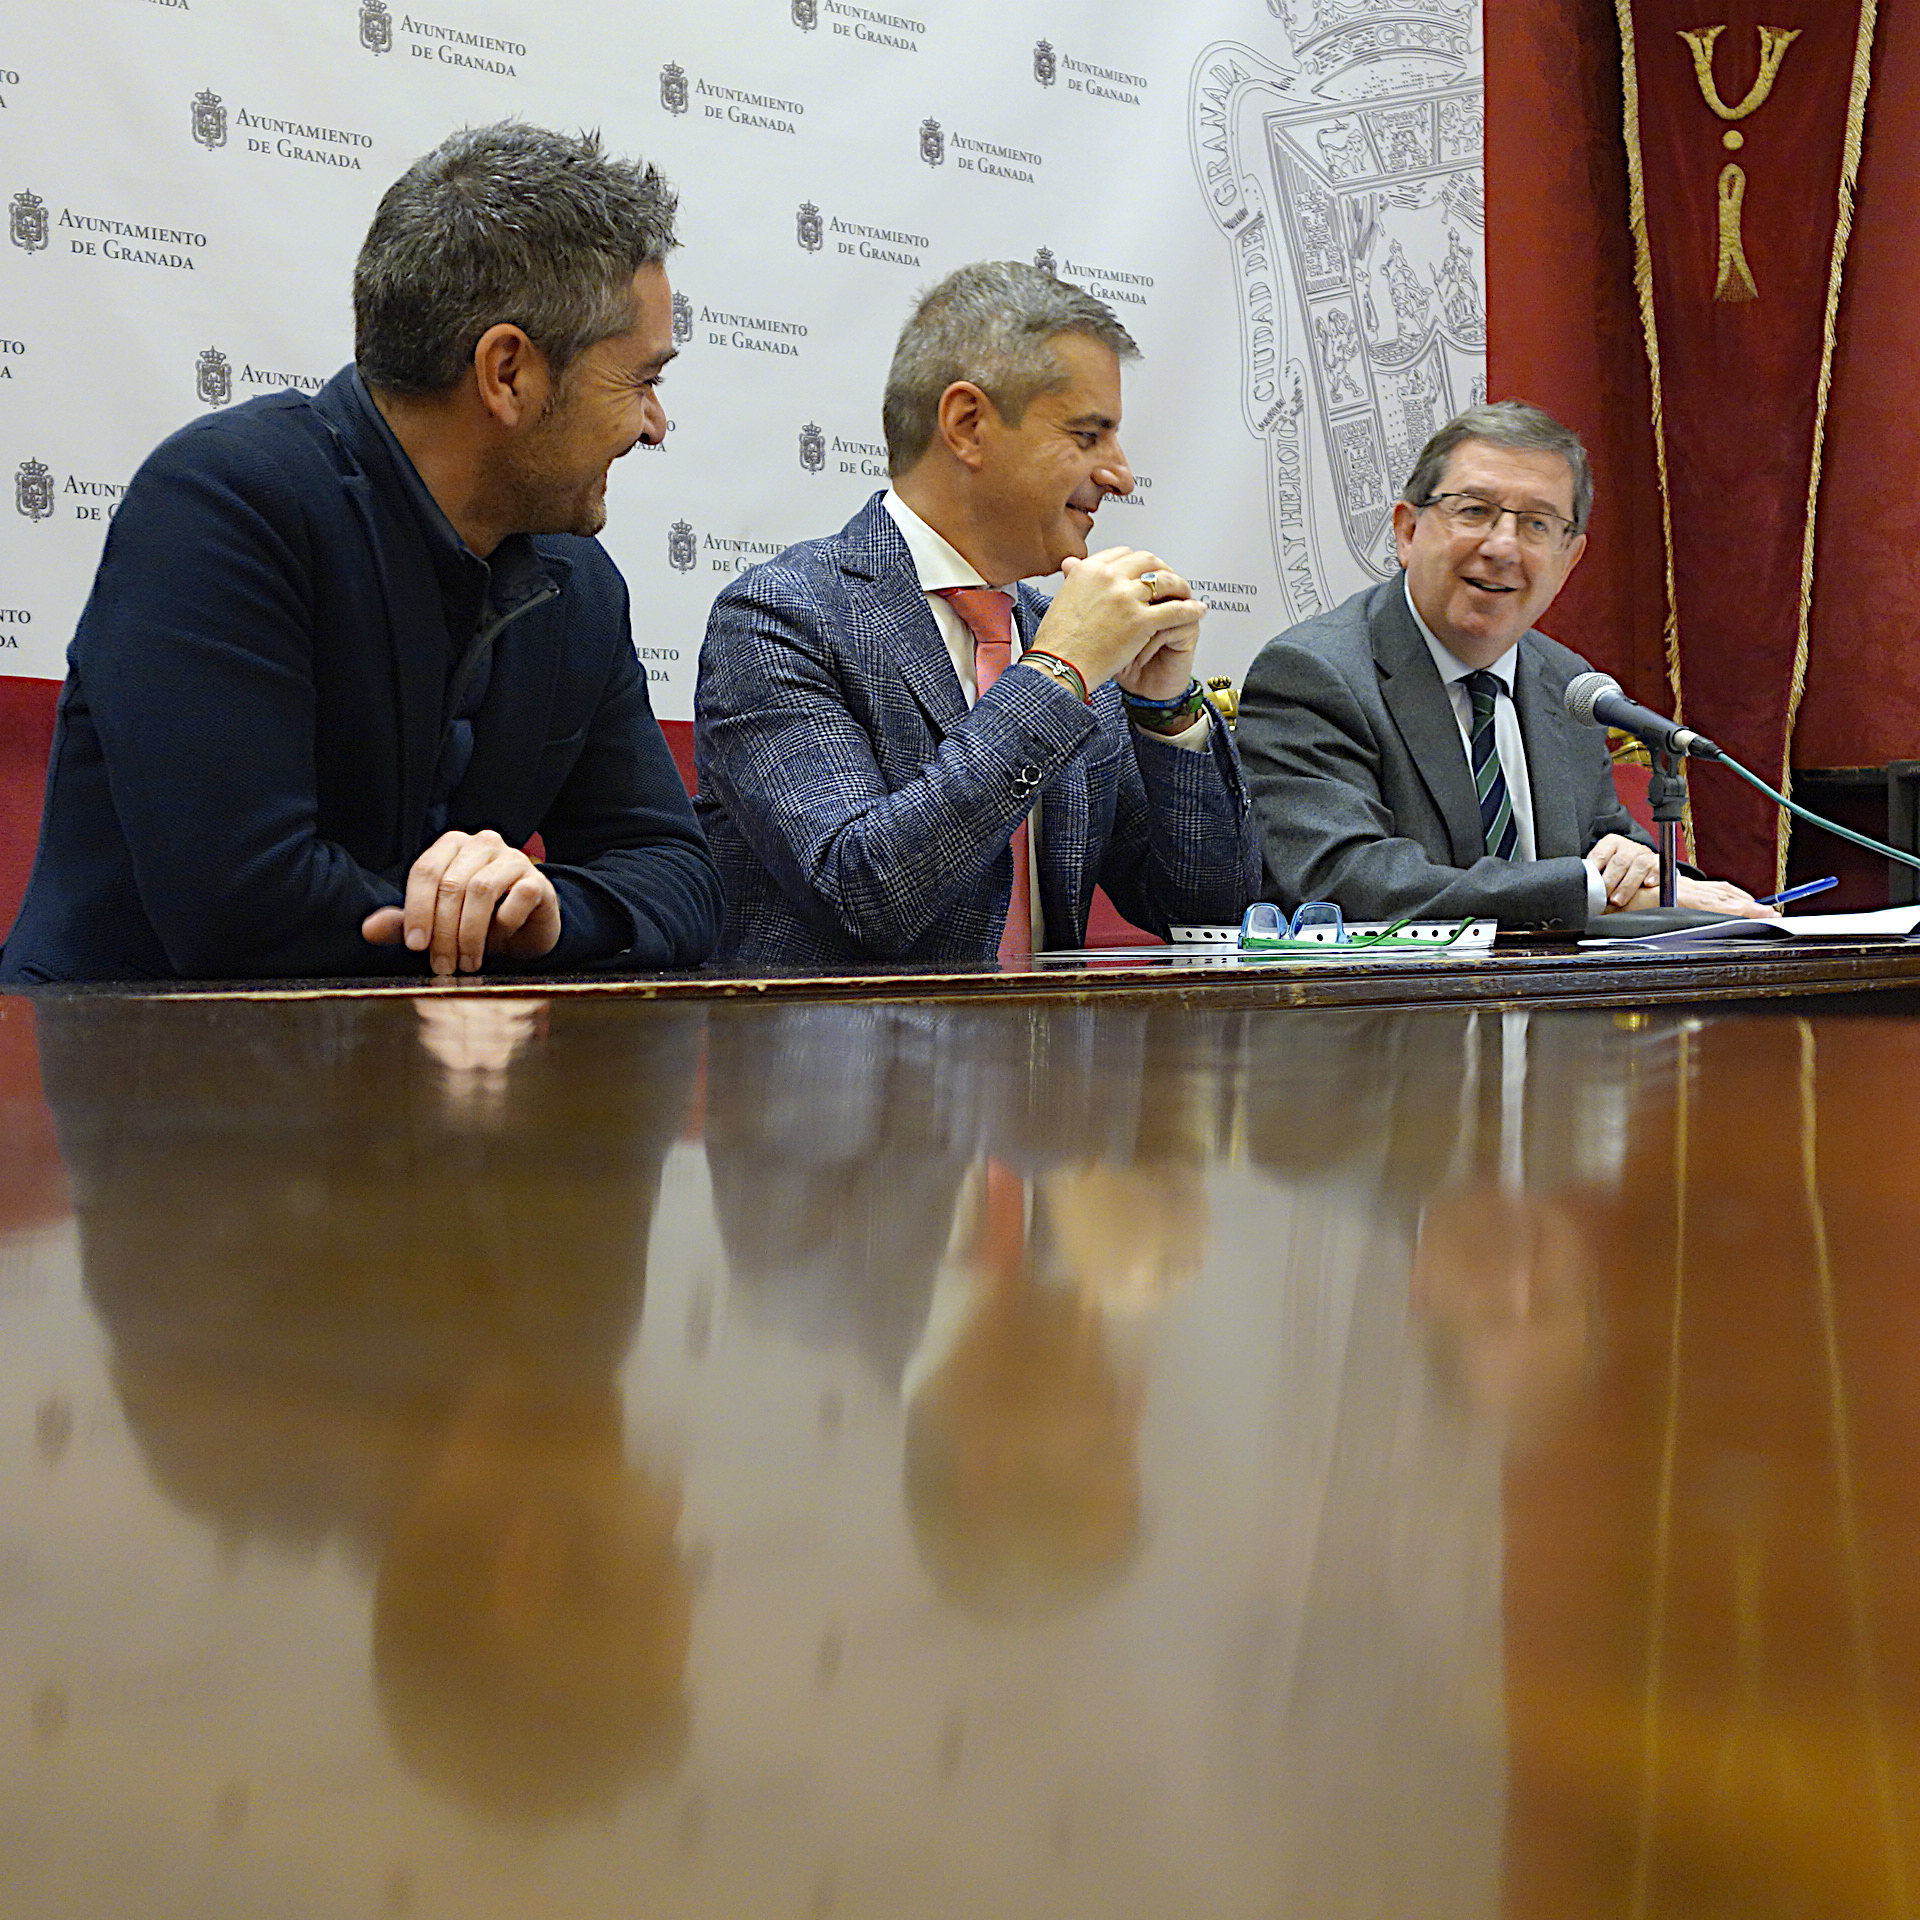 ©Ayto.Granada: La Junta de Gobierno aprueba la adjudicacin de 10.5 millones de euros en prstamos de distintas entidades financieras para pagar a proveedores a corto plazo